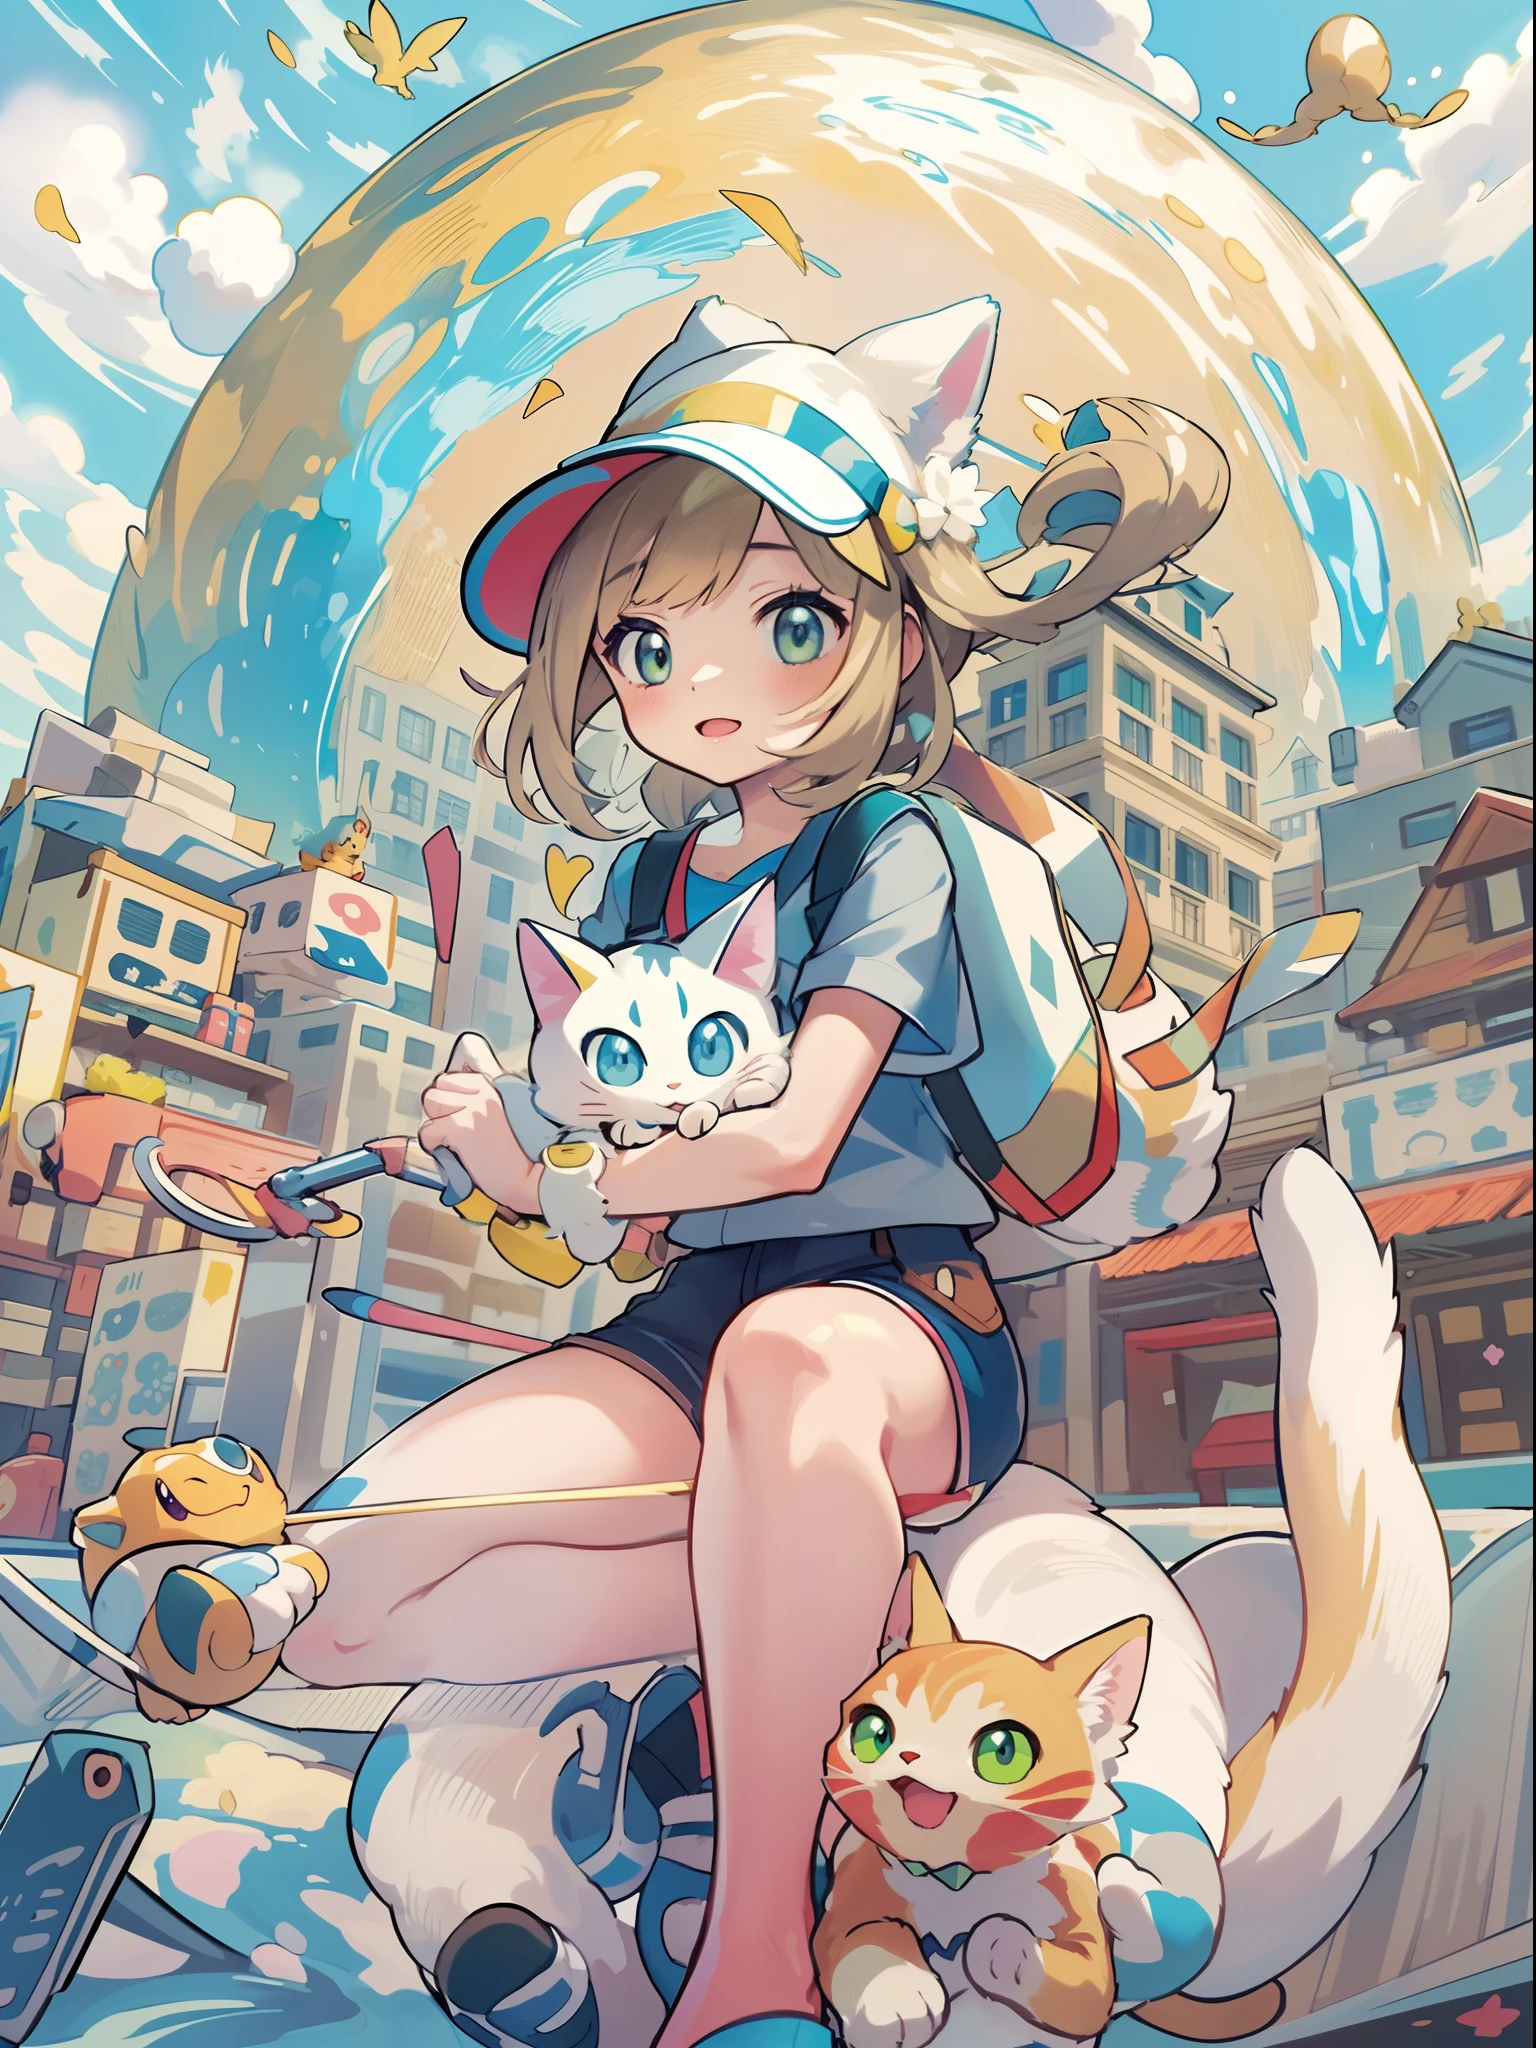 1 chica en,el pokemon_La tarjeta,(top-calidad), (Alto_calidad), (Complejo_detalles), (ultra detallado), (iluminación), (distinto_imagen),saito_Naoki,paisaje de la ciudad、Vista del arco iris、Con gatos（（lindo gato１.５））